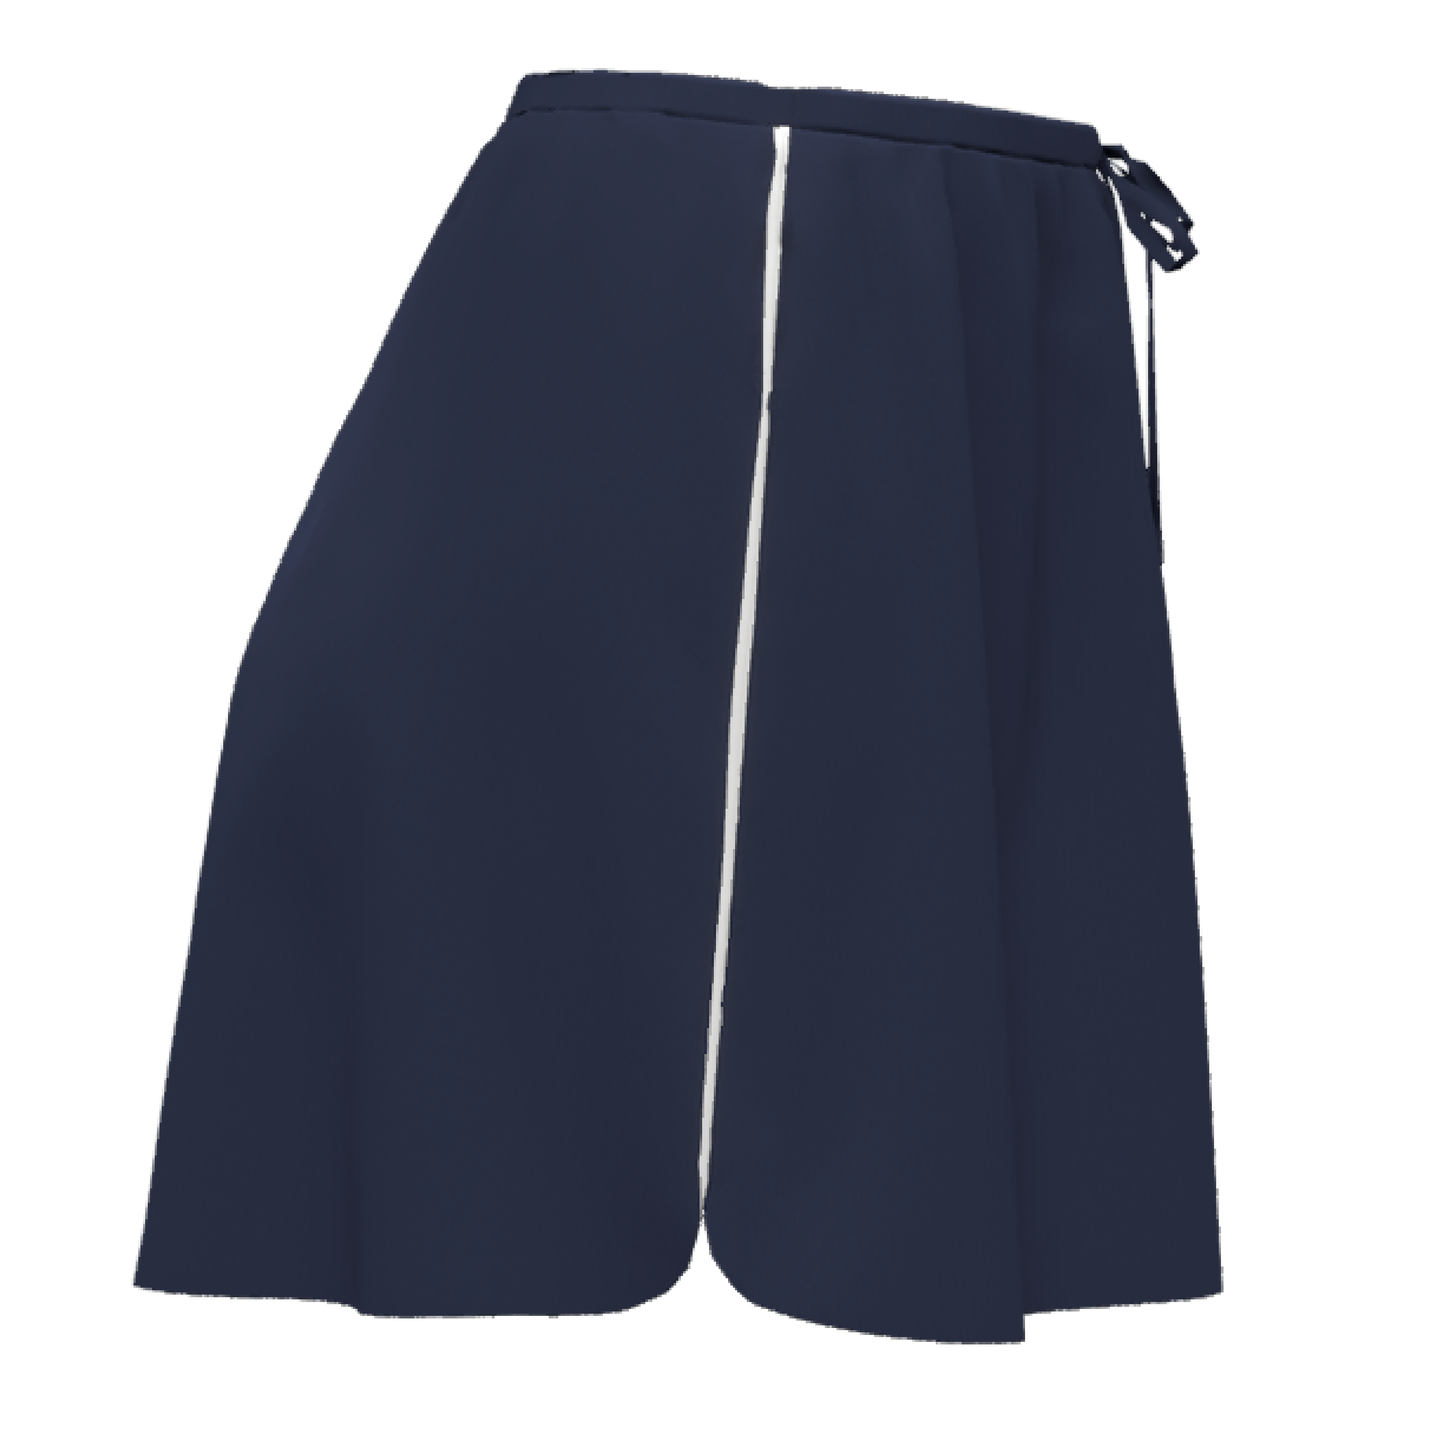 Taylor Pocket Skirt: Midnight Navy